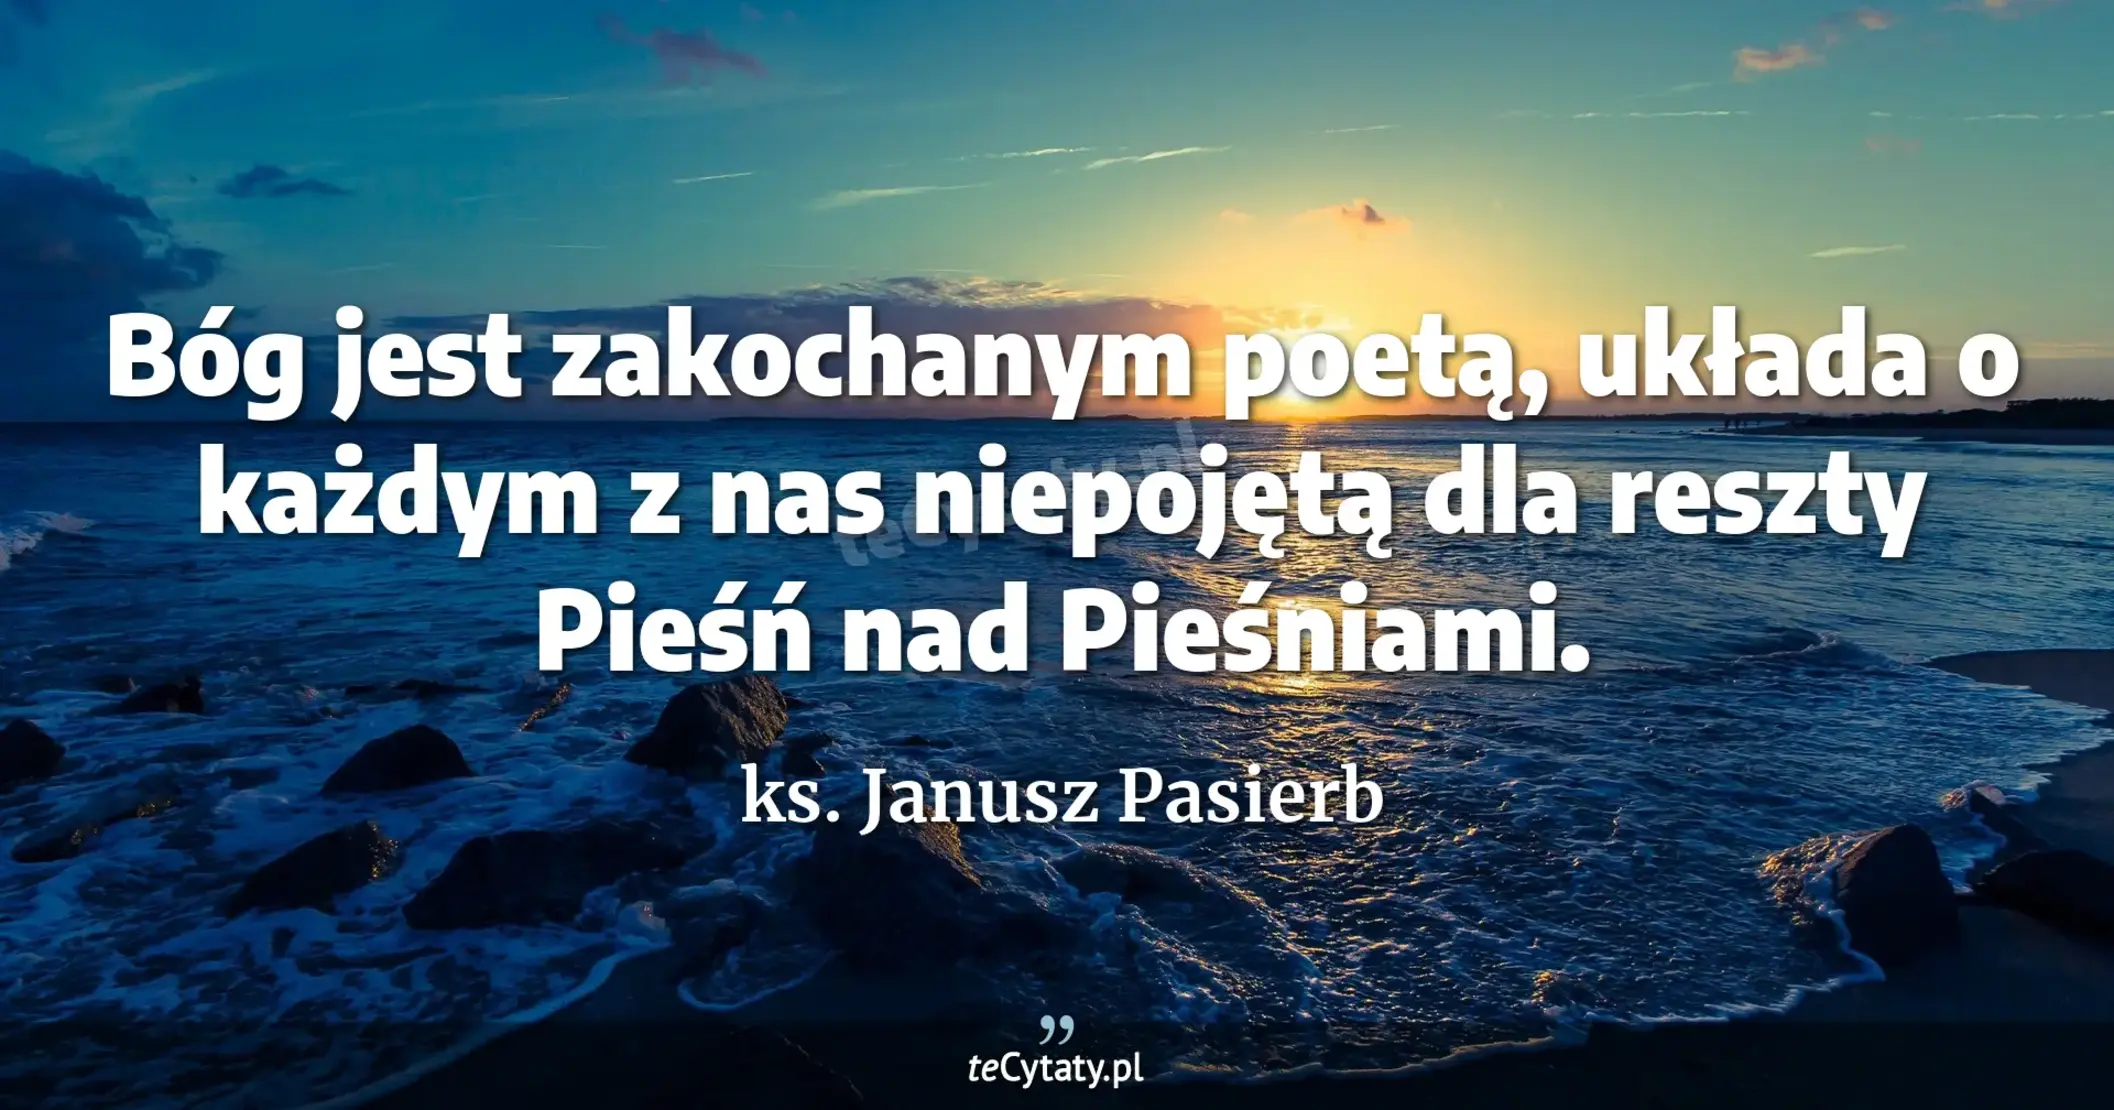 Bóg jest zakochanym poetą, układa o każdym z nas niepojętą dla reszty Pieśń nad Pieśniami. - ks. Janusz Pasierb